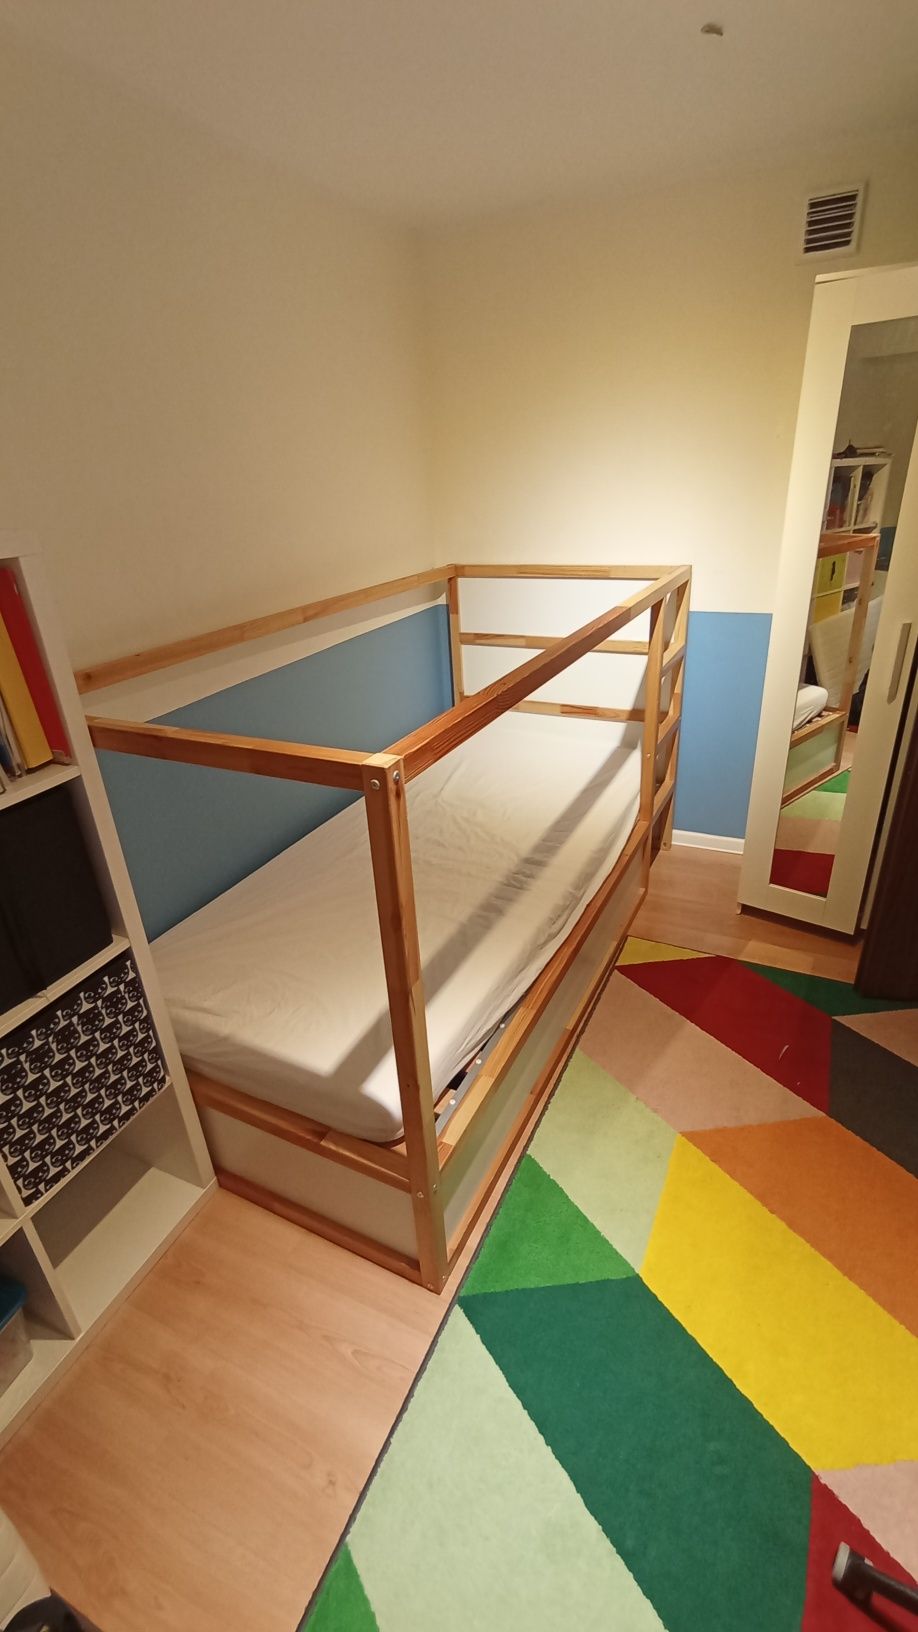 Łóżko model  Kura IKEA